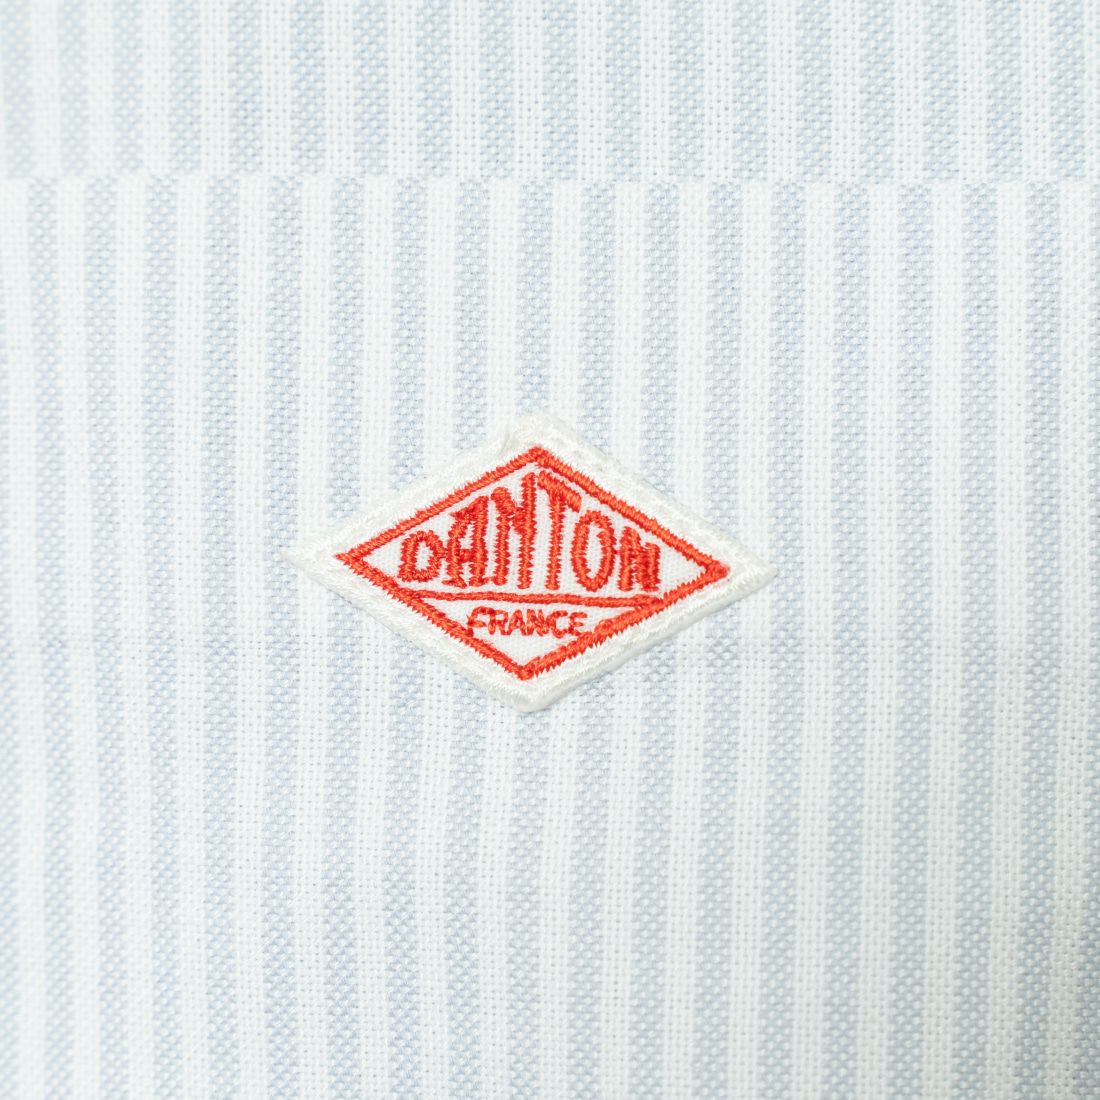 DANTON [ダントン] クールマックス オックスフォードボタンダウンシャツ [DT-B0115CMX] WHITE/GREY